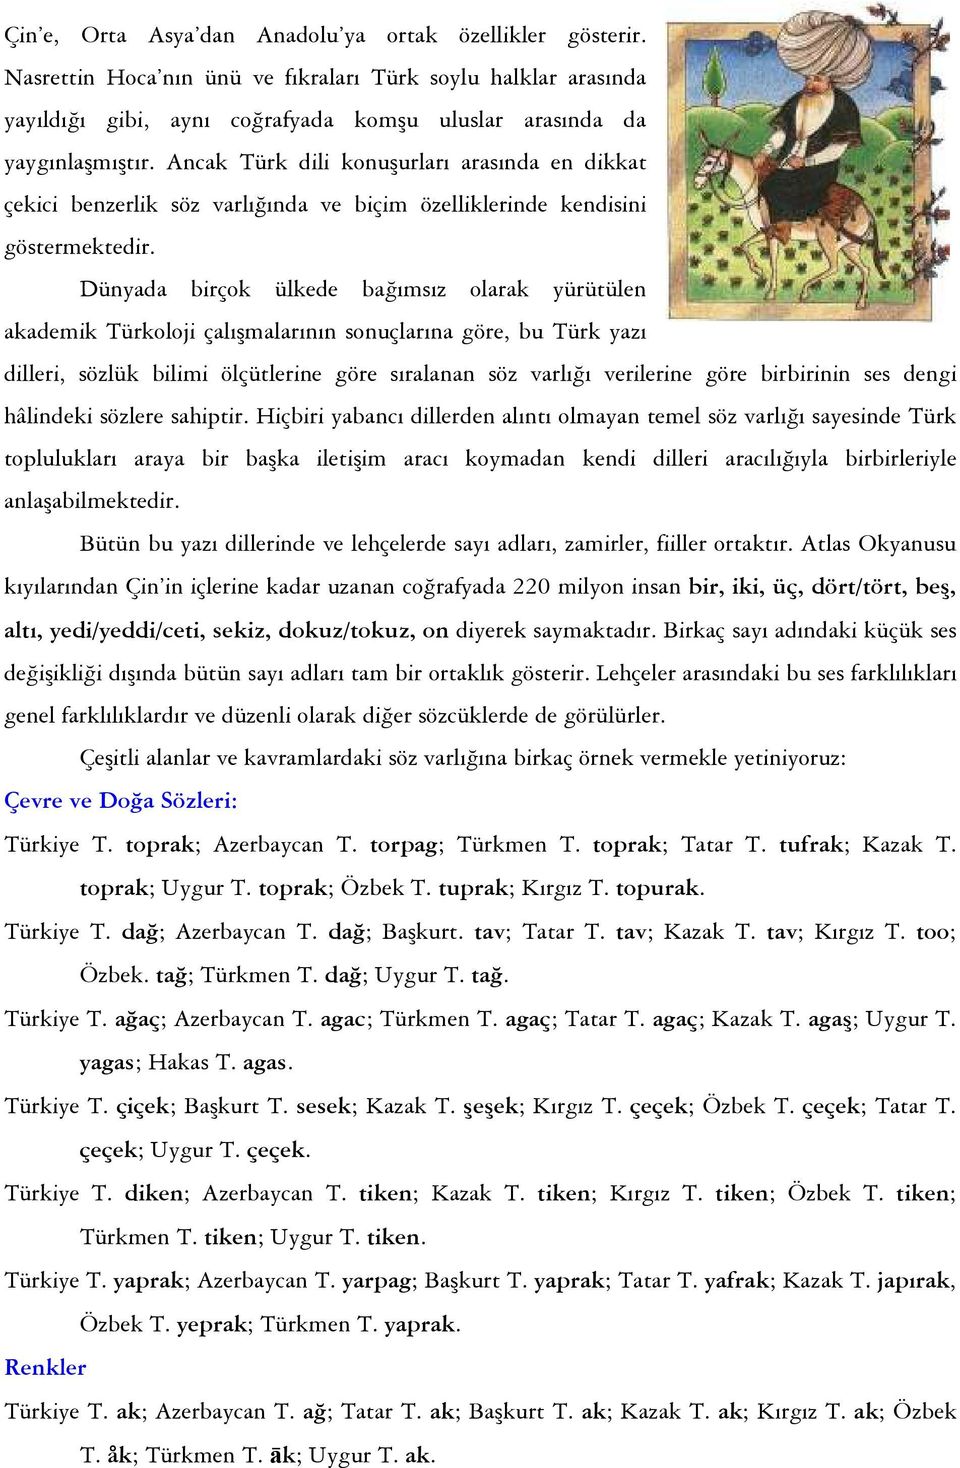 Dünyada birçok ülkede bağımsız olarak yürütülen akademik Türkoloji çalışmalarının sonuçlarına göre, bu Türk yazı dilleri, sözlük bilimi ölçütlerine göre sıralanan söz varlığı verilerine göre